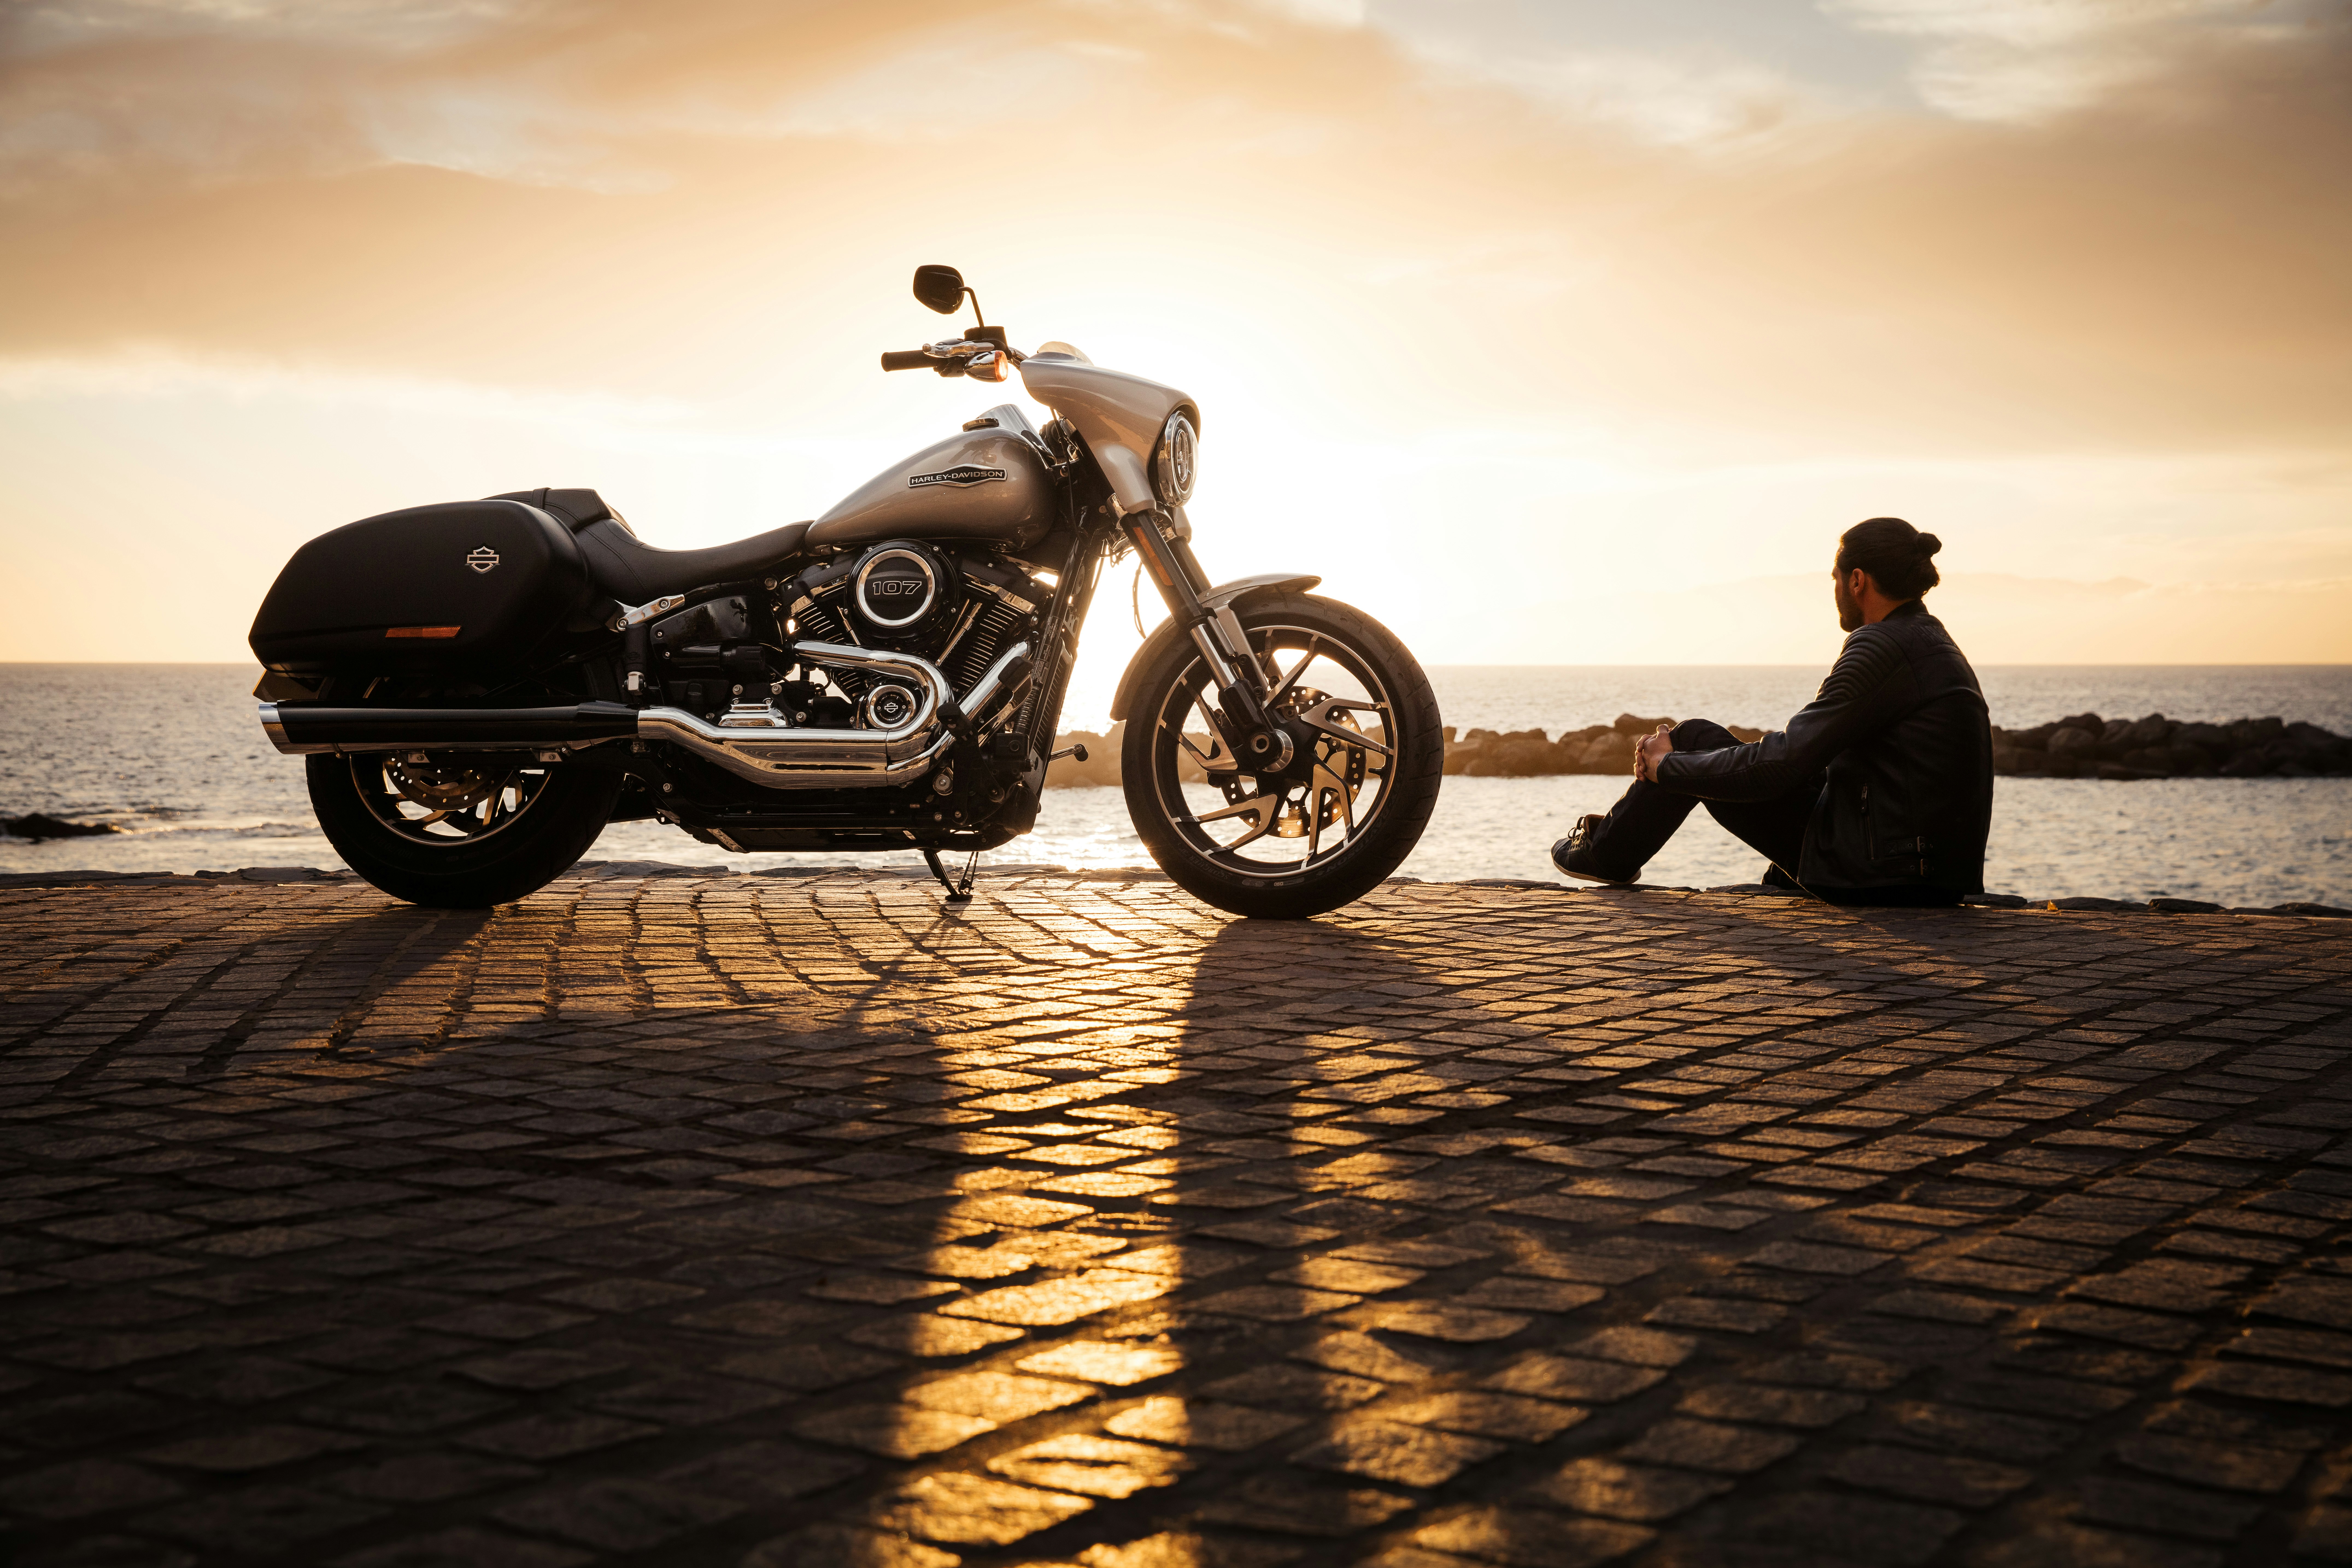 assurez votre moto en ligne avec notre assurance moto en ligne facile et rapide. obtenez une couverture complète pour votre moto dès maintenant.